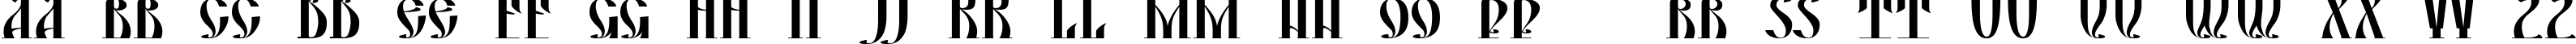 Пример написания английского алфавита шрифтом DS Yermak_D